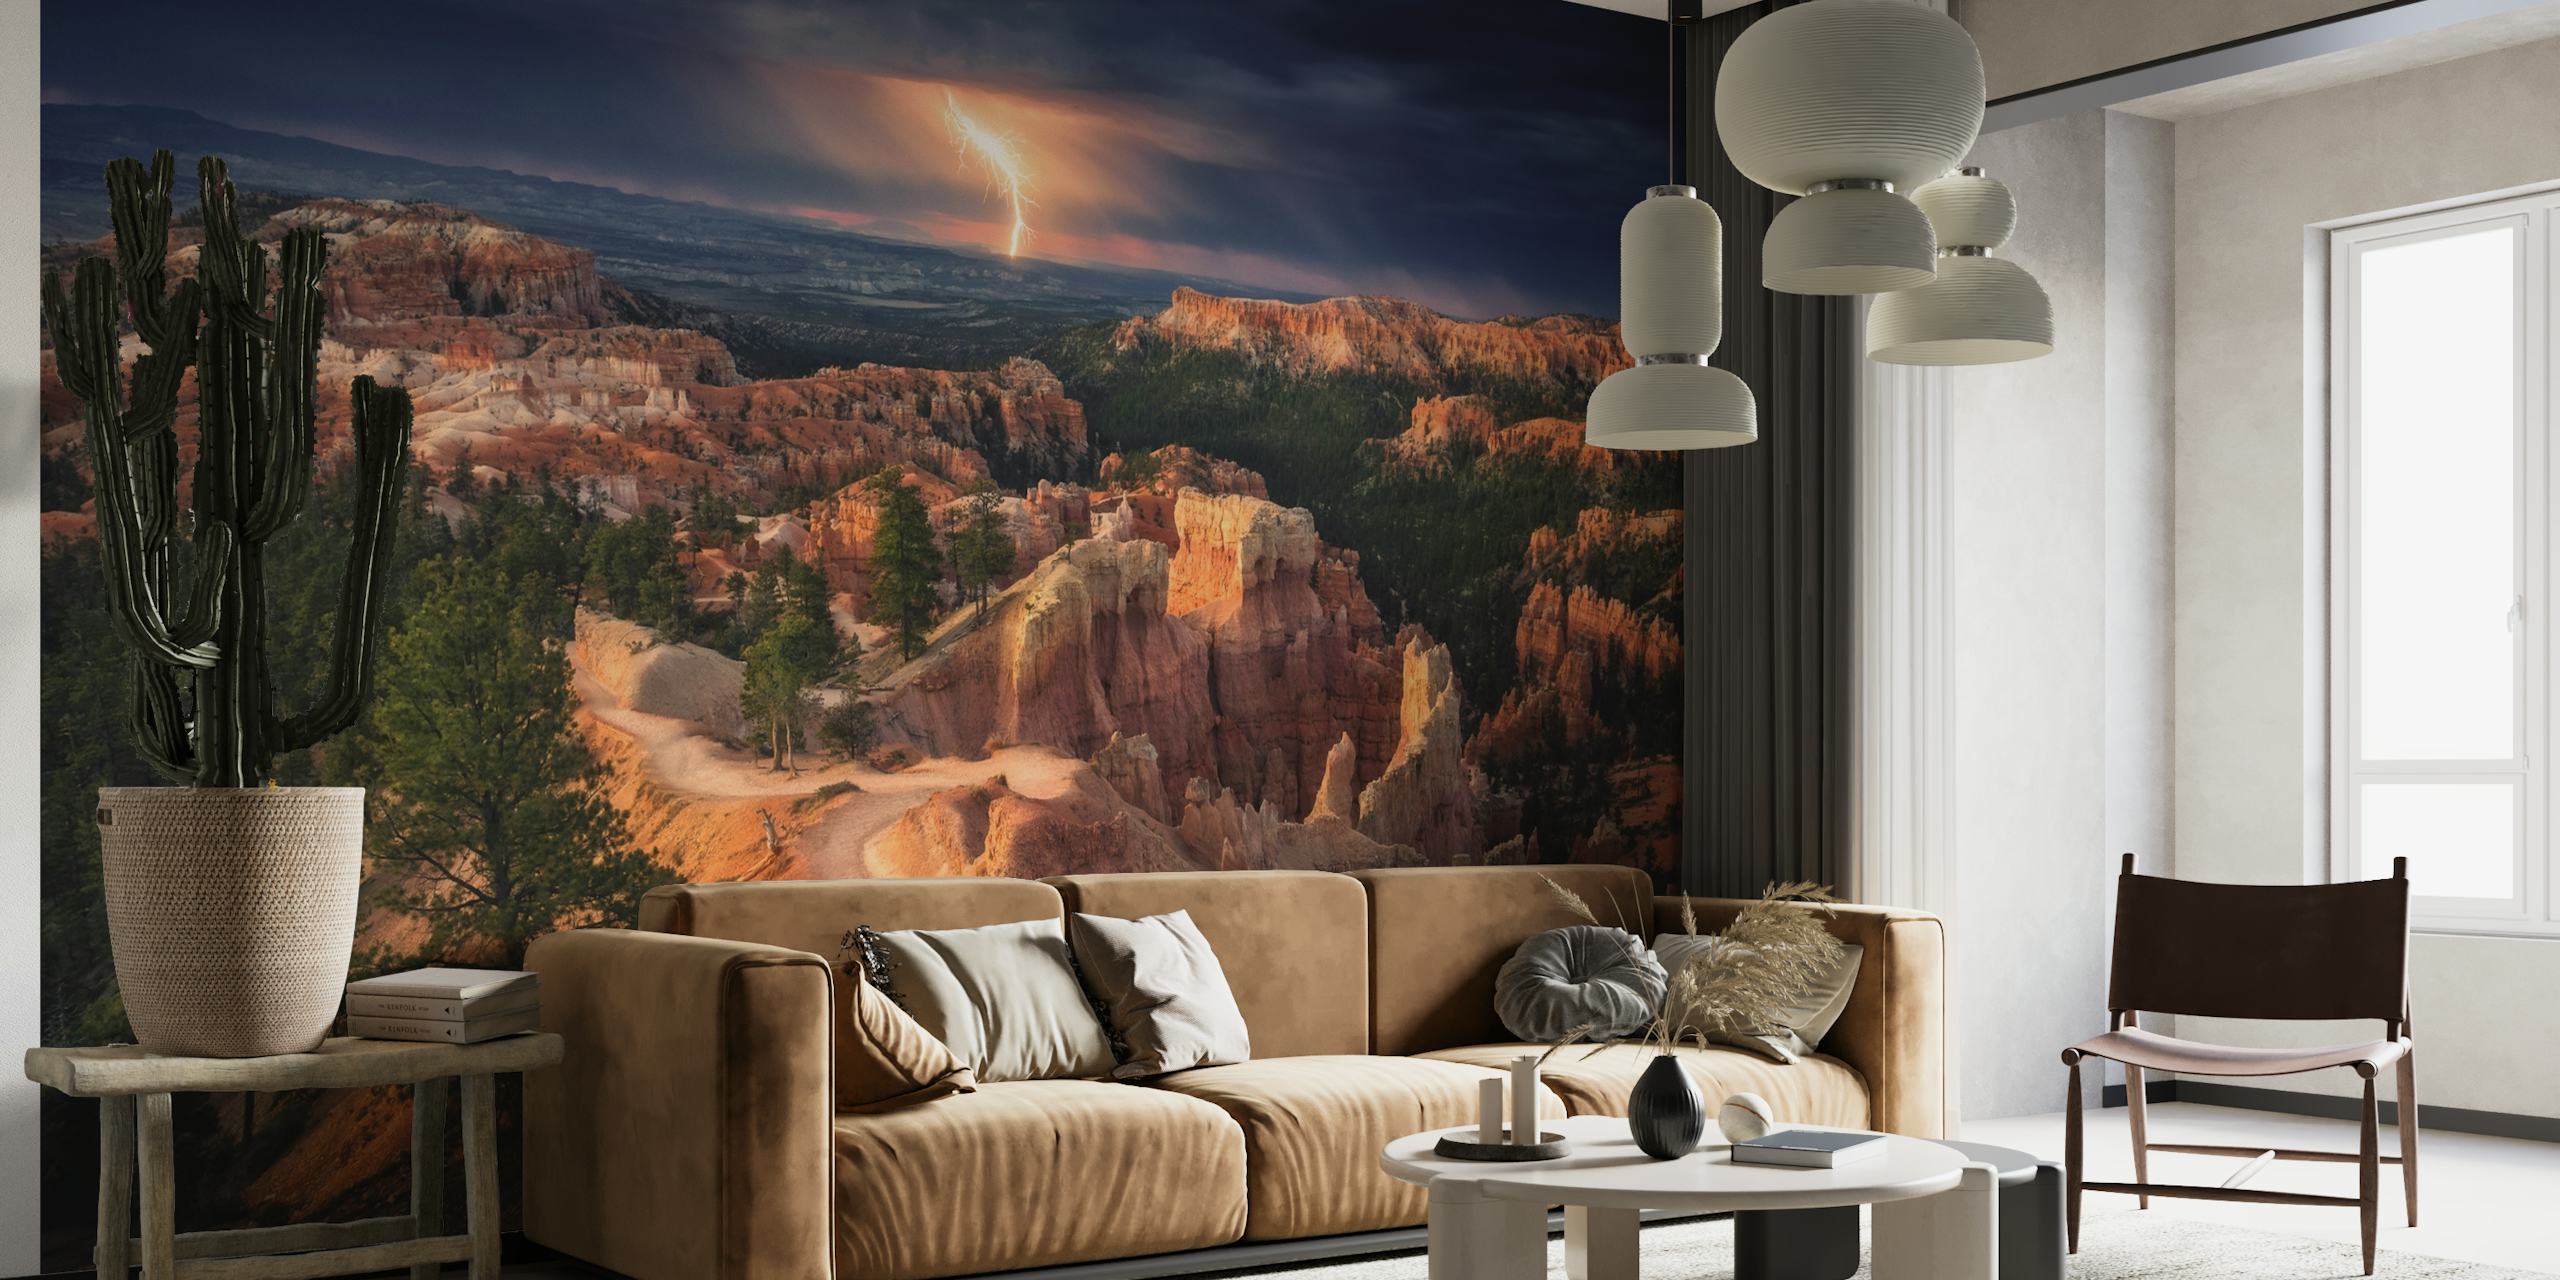 Tormenta eléctrica sobre el mural de Bryce Canyon con nubes dinámicas y formaciones rocosas iluminadas.